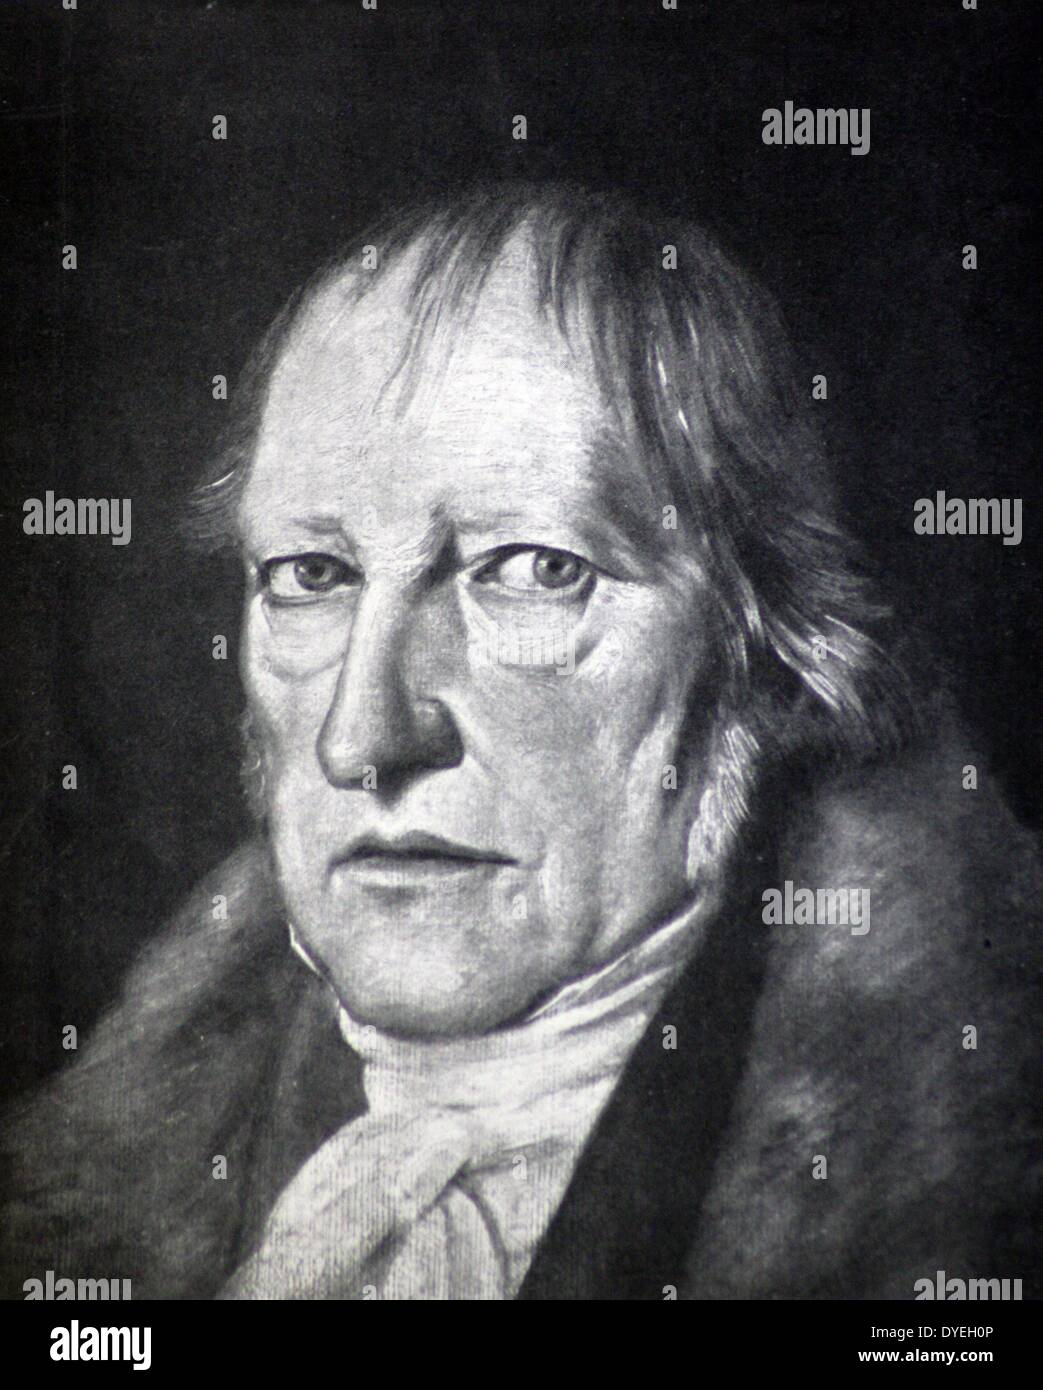 Georg Wilhelm Friedrich Hegel (1770-1831) war ein deutscher Philosoph und eine wichtige Figur im Deutschen Idealismus. Seine historistische und idealistische Konto der Wirklichkeit revolutionierte die Europäische Philosophie und war ein wichtiger Vorläufer zu den kontinentalen Philosophie und Marxismus. Stockfoto